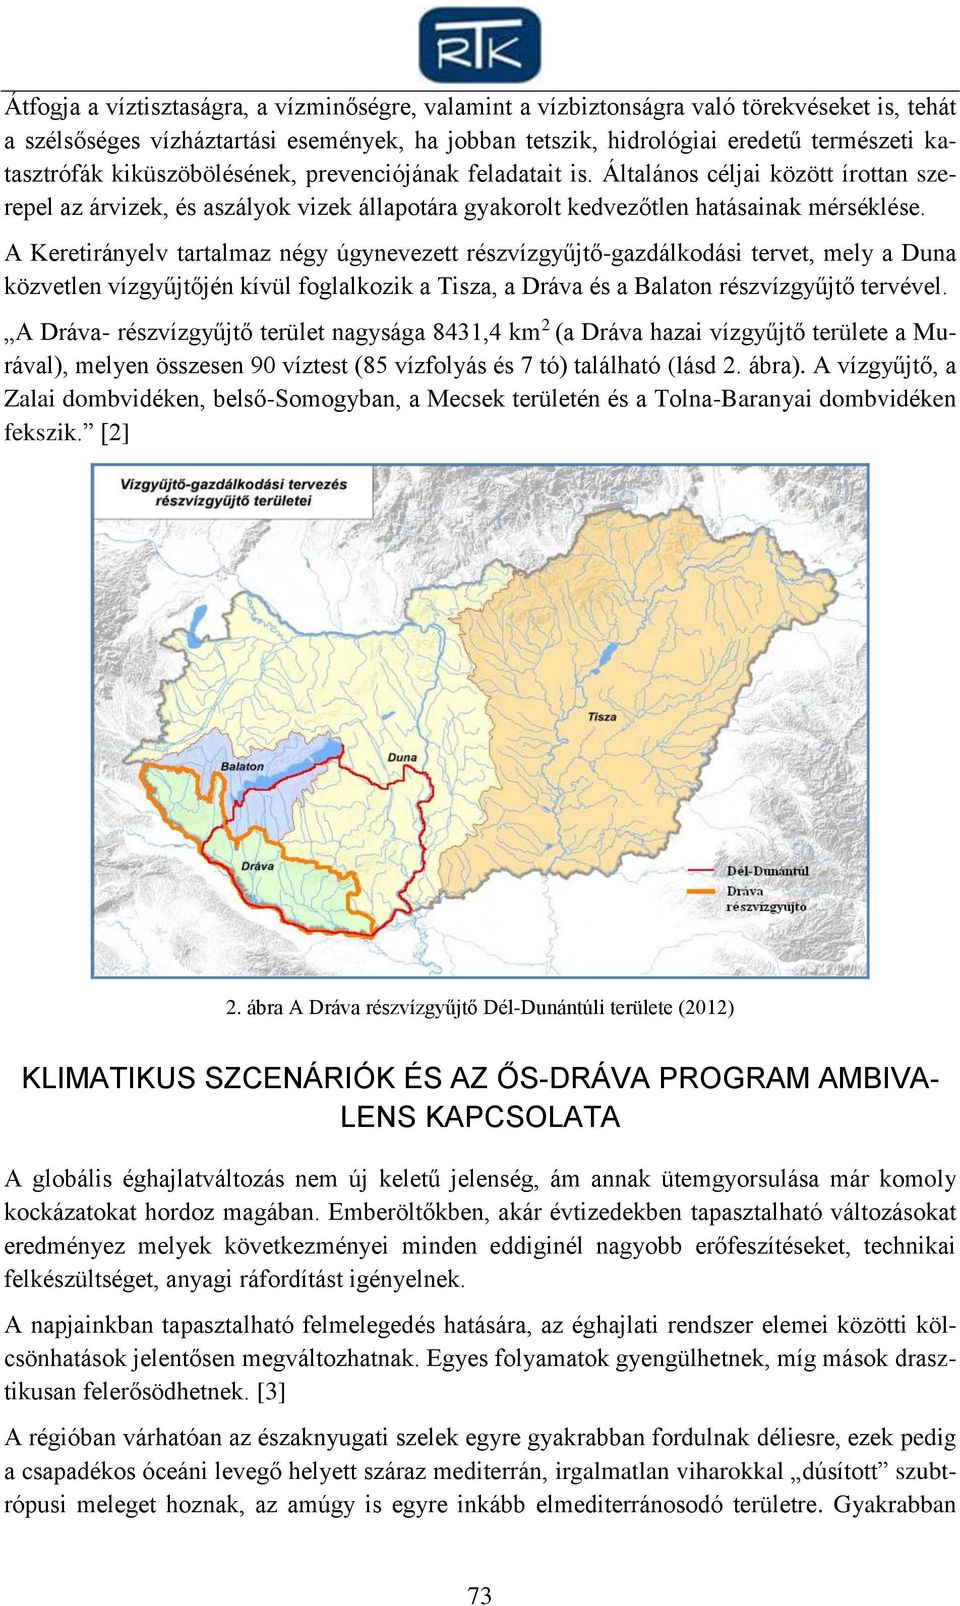 A Keretirányelv tartalmaz négy úgynevezett részvízgyűjtő-gazdálkodási tervet, mely a Duna közvetlen vízgyűjtőjén kívül foglalkozik a Tisza, a Dráva és a Balaton részvízgyűjtő tervével.